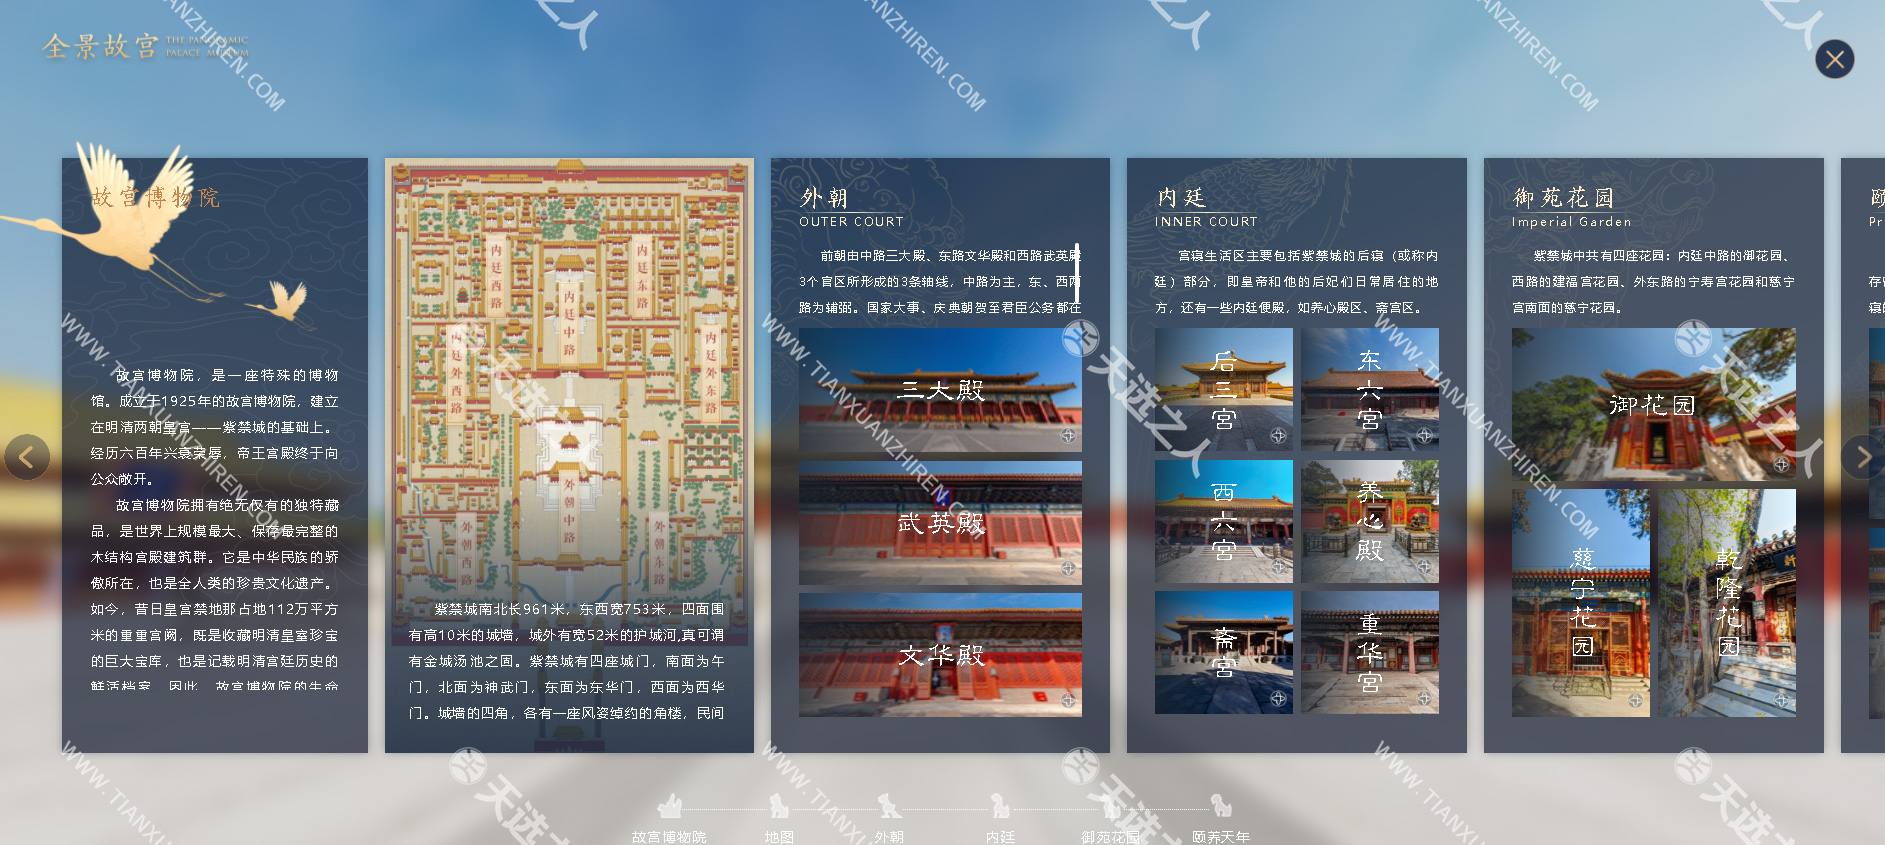 在线欣赏全景故宫-Gugong Pano-360度全景高清图模拟了沉浸式故宫一日游紫禁城的春夏秋冬